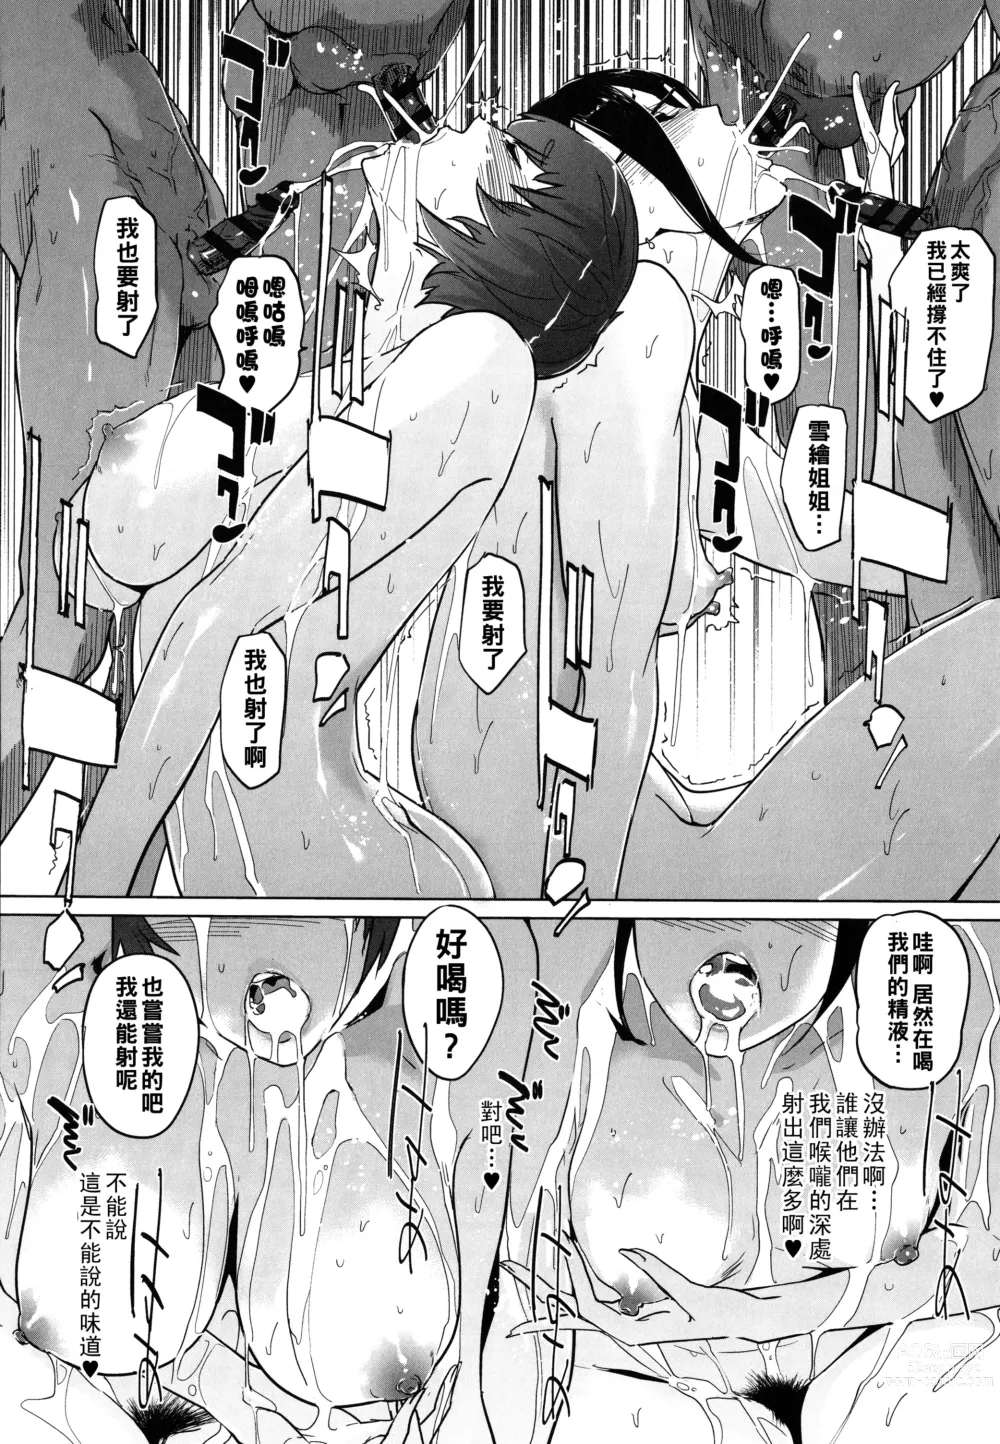 Page 64 of manga Natsu no Su